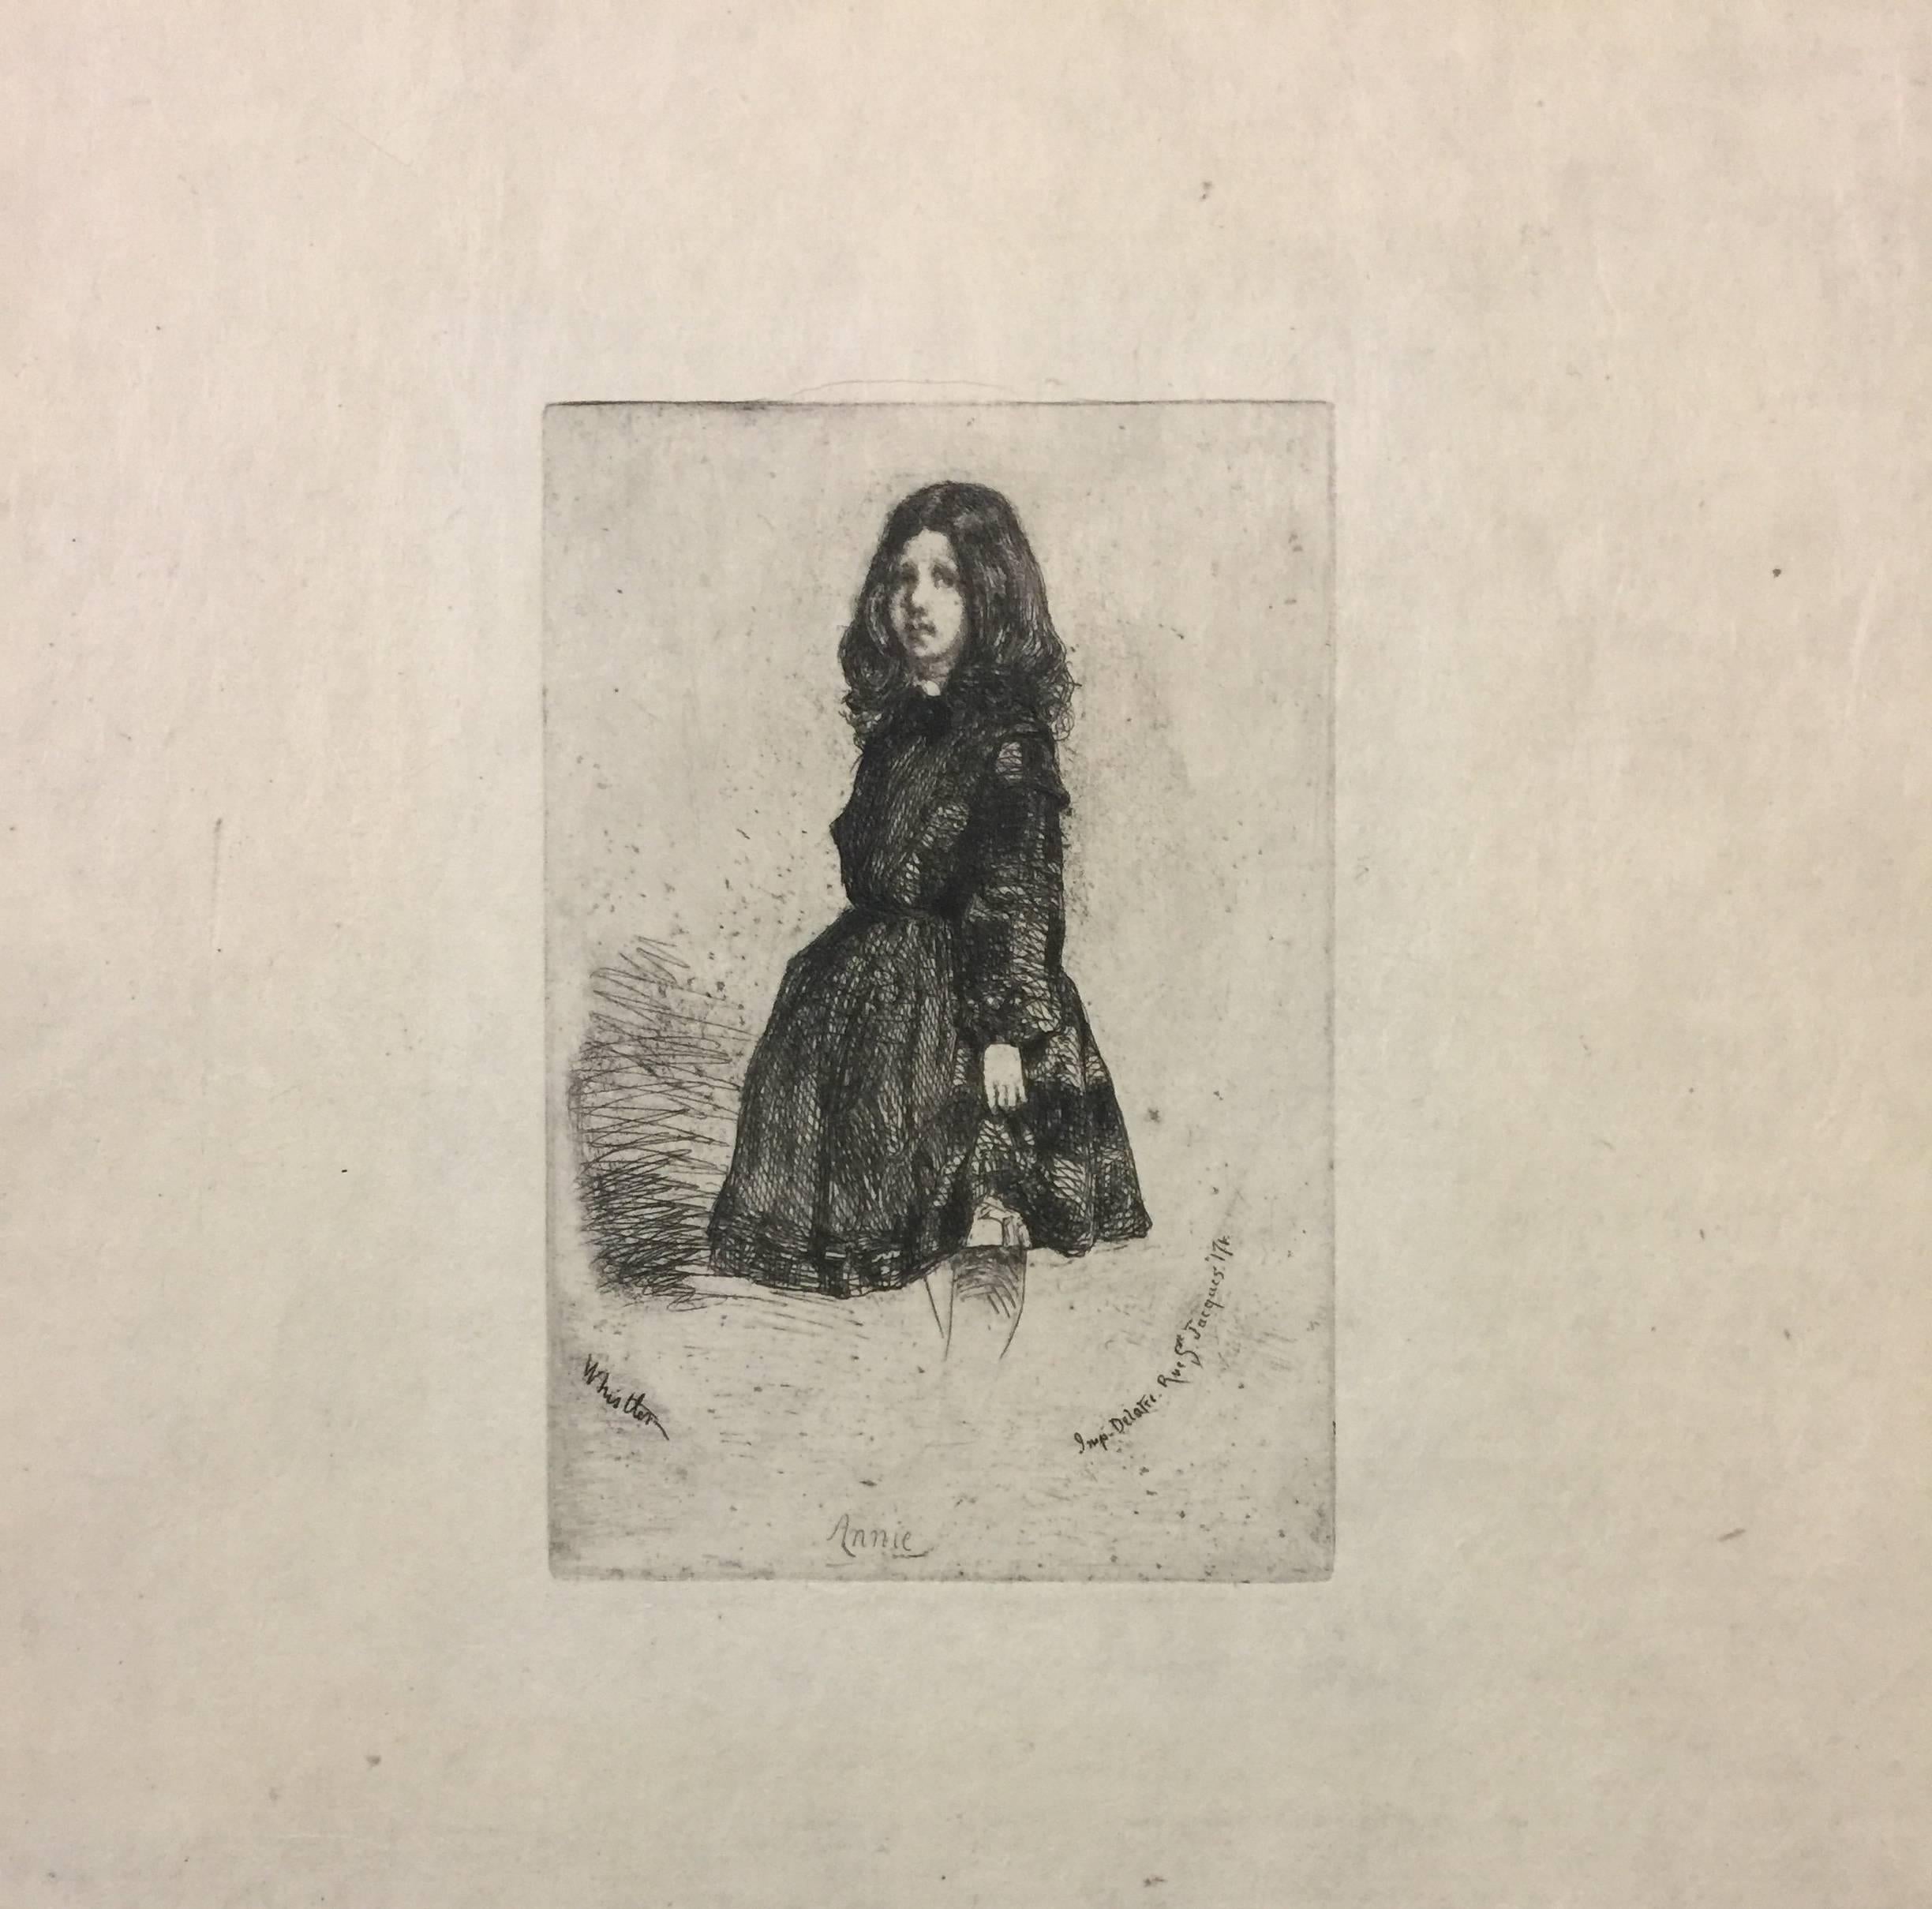 James Abbott McNeill Whistler Portrait Print - Annie - Original Etching by James Whistler